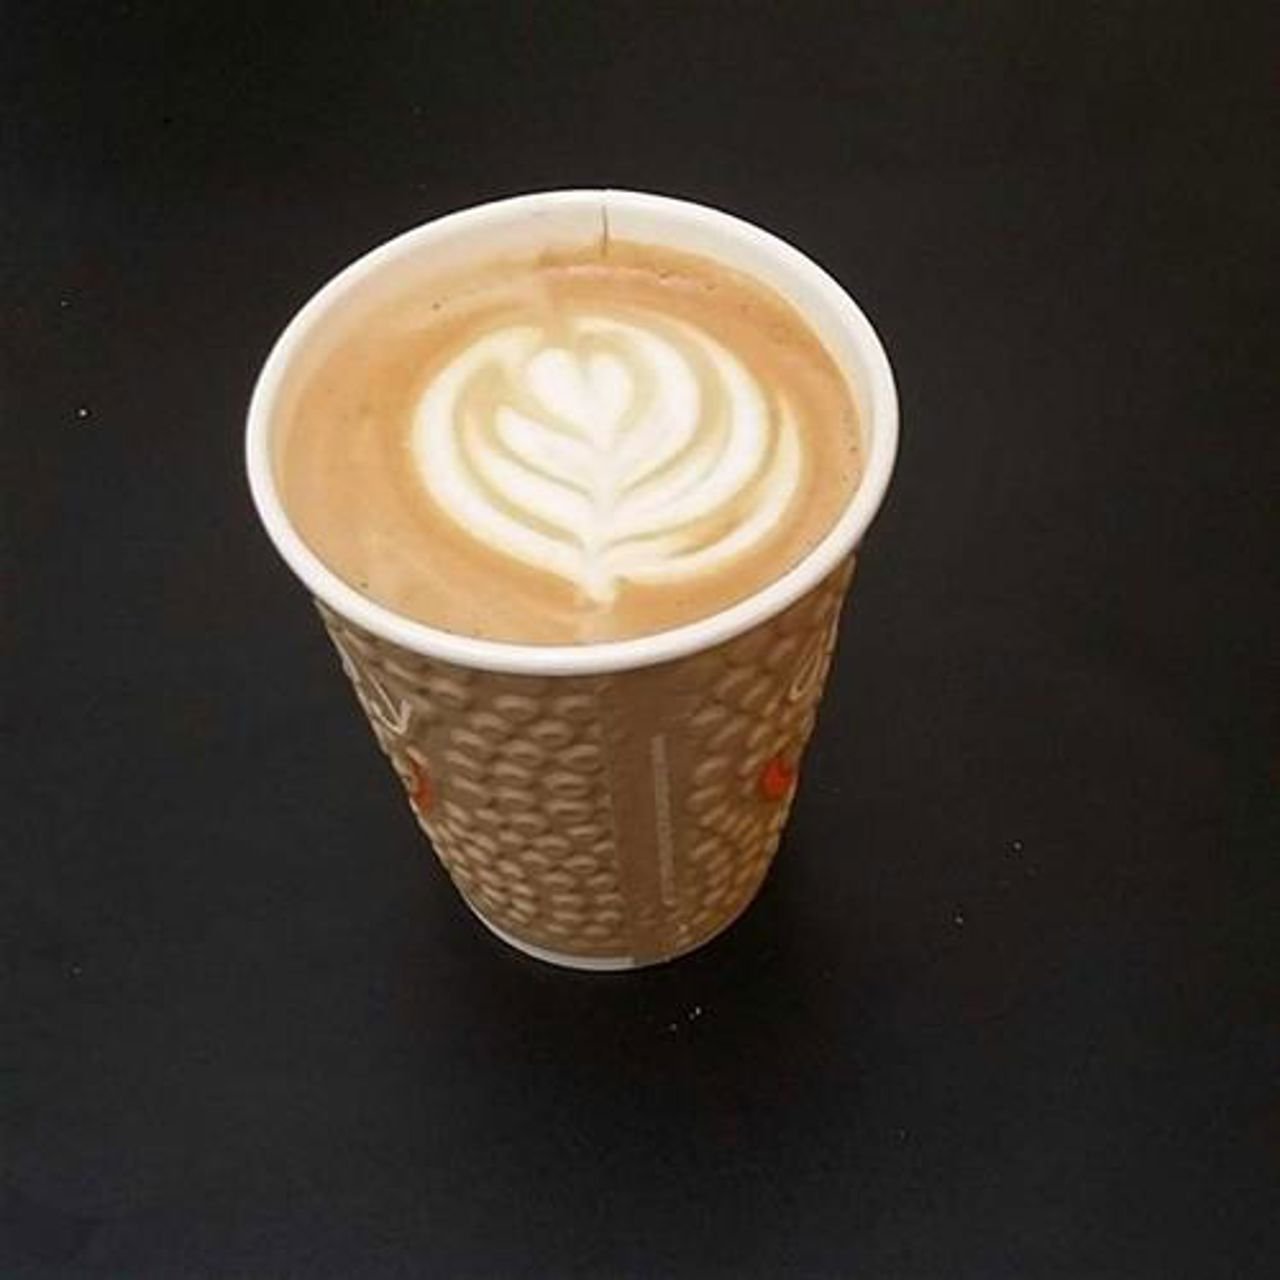 Bilde av kaffe med bladmønster på toppen